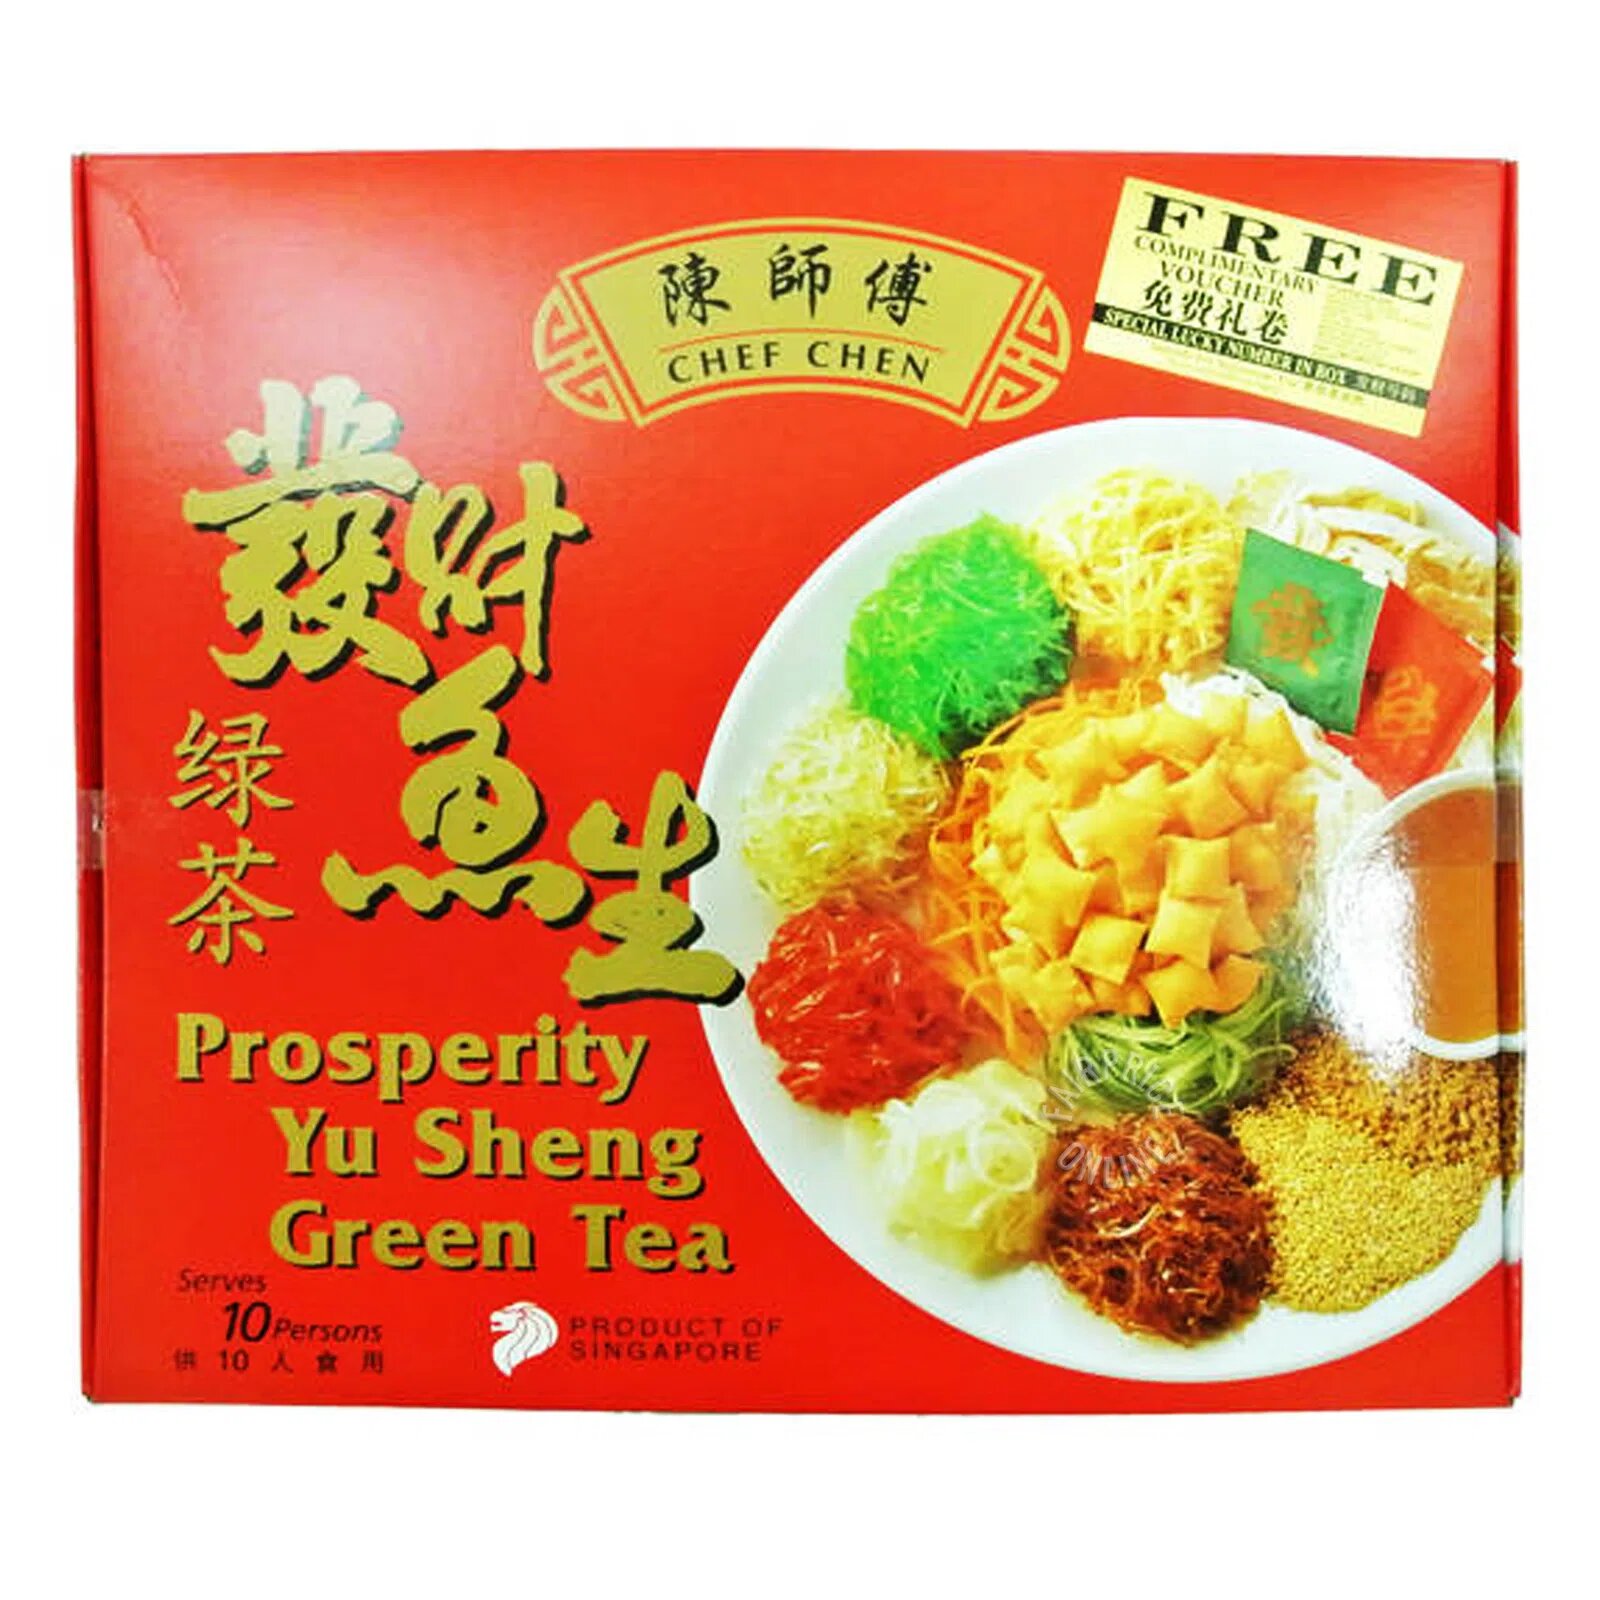 Chef Chen Yu Sheng Green Tea